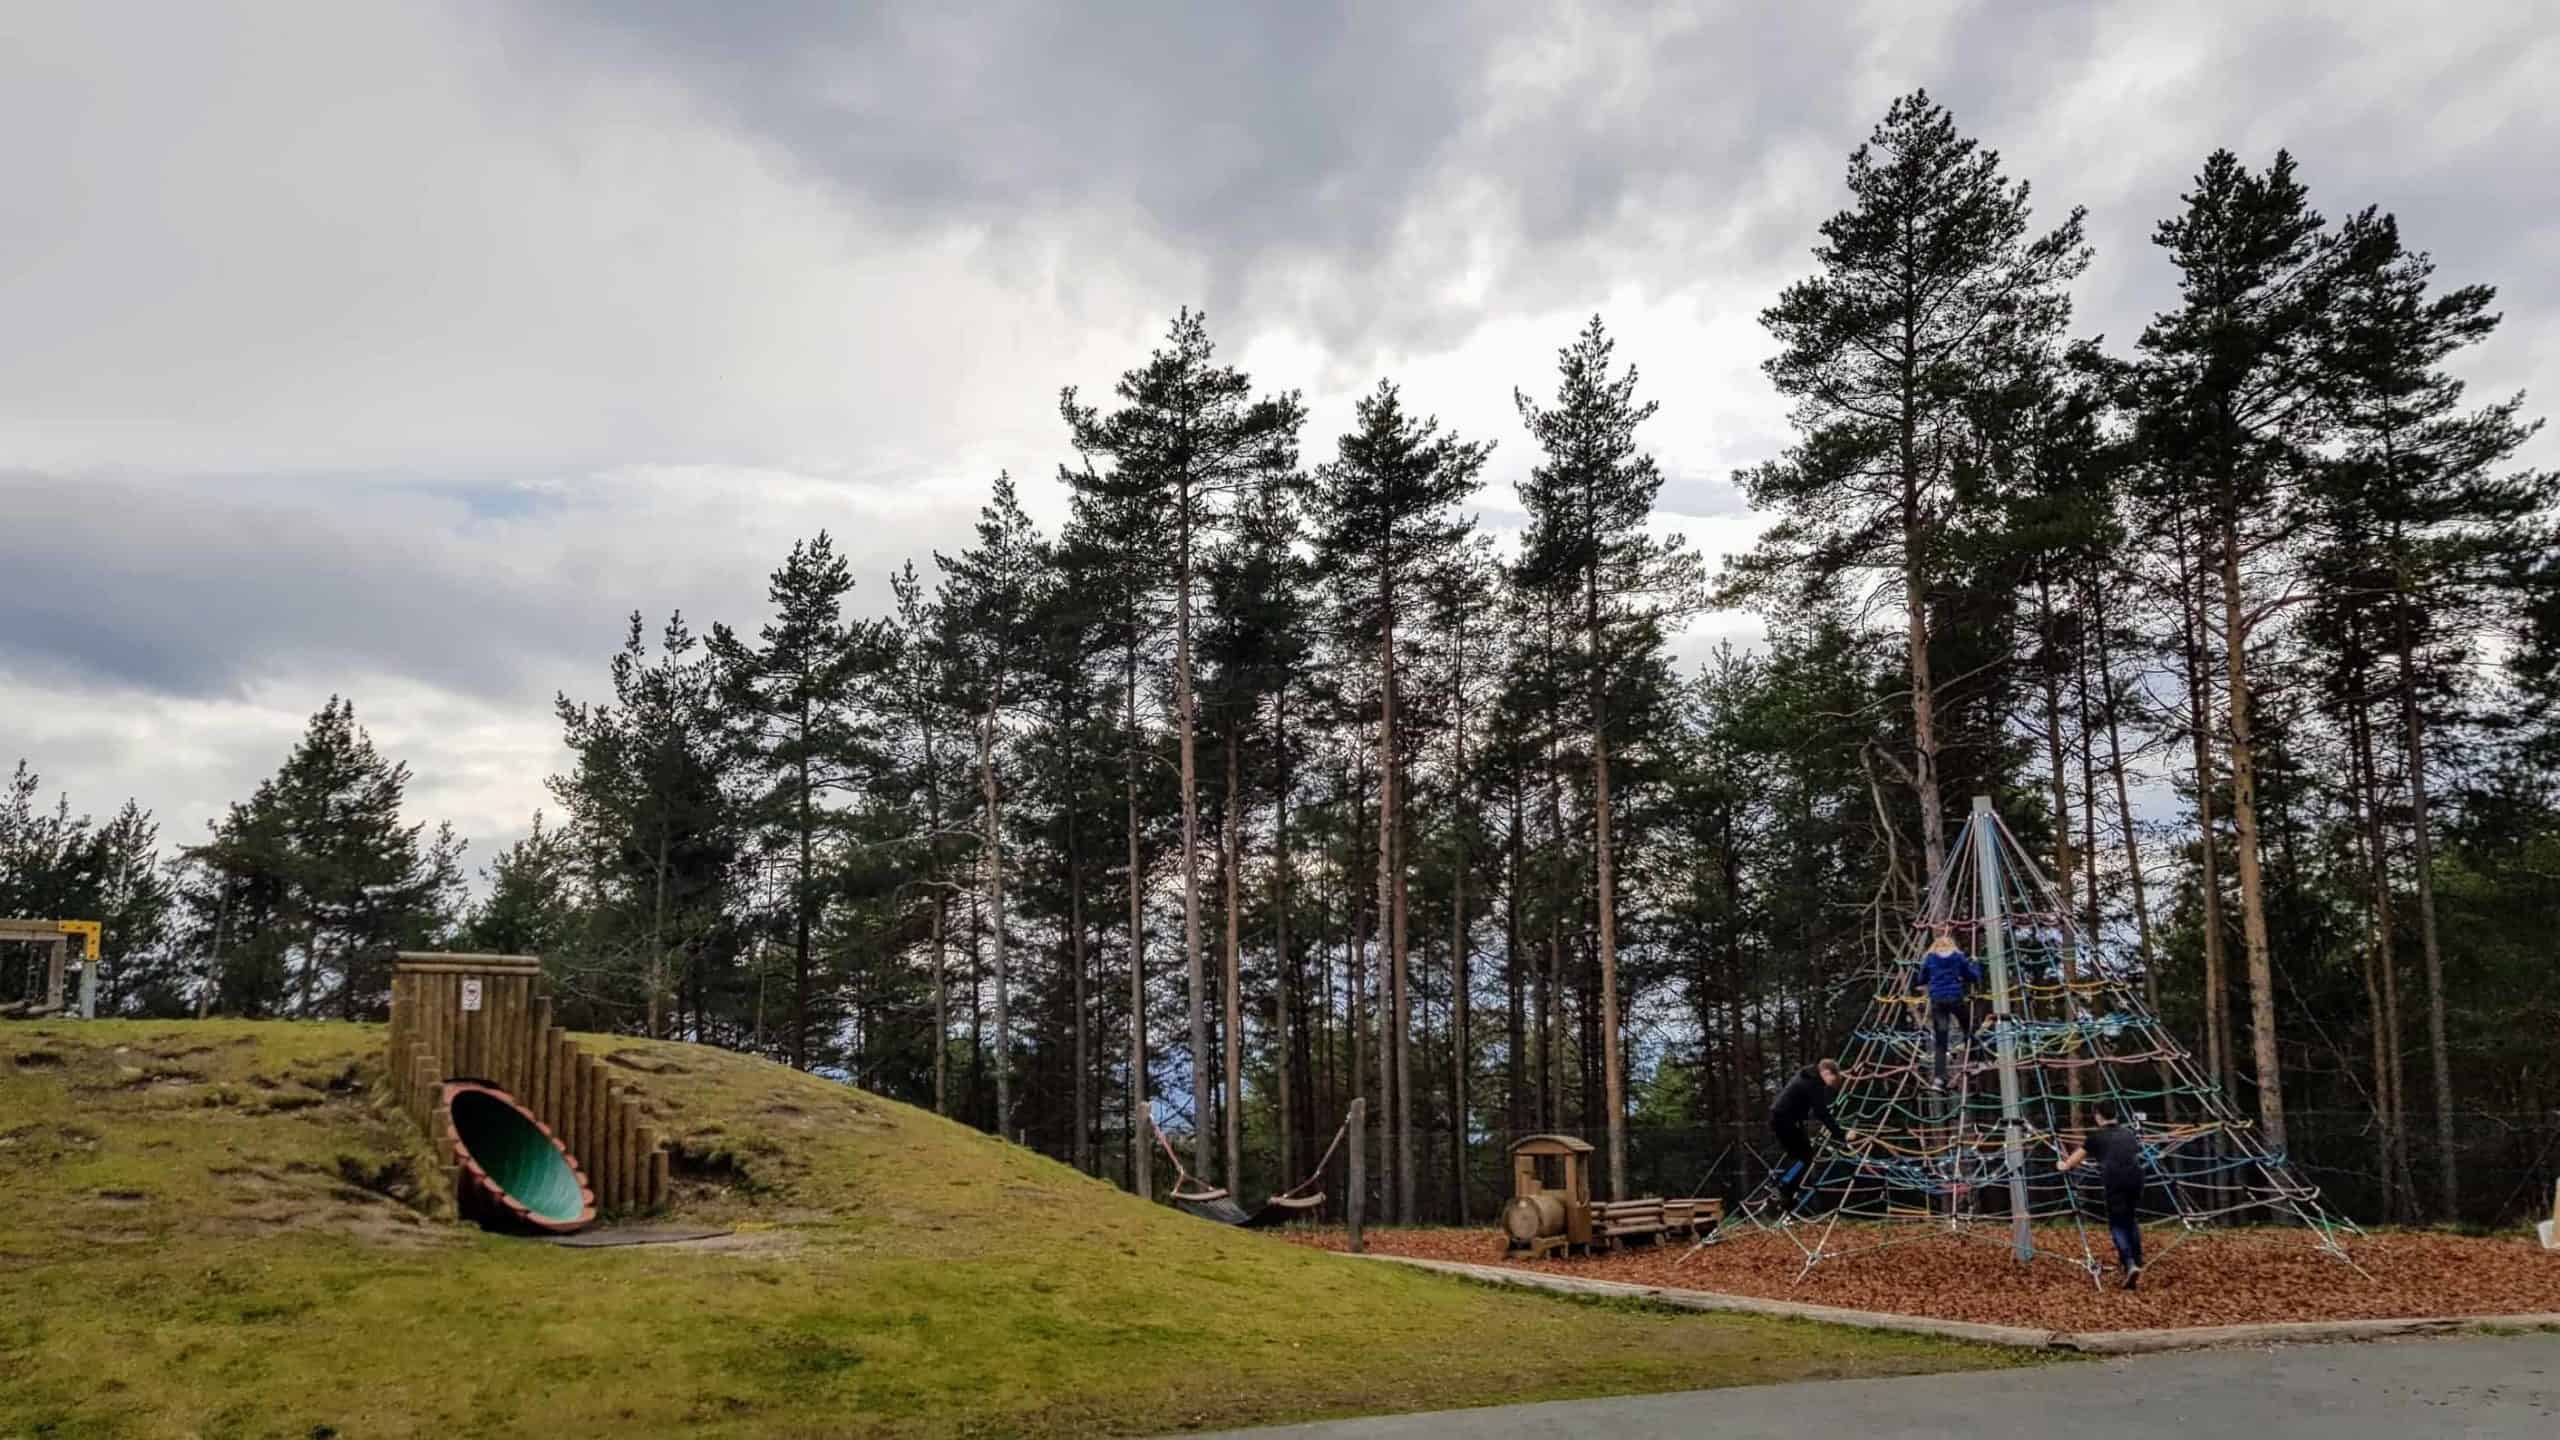 Abenteuerspielplatz Pyramidenkogel am Wörthersee - Ausflugstipp für Kinder in Kärnten